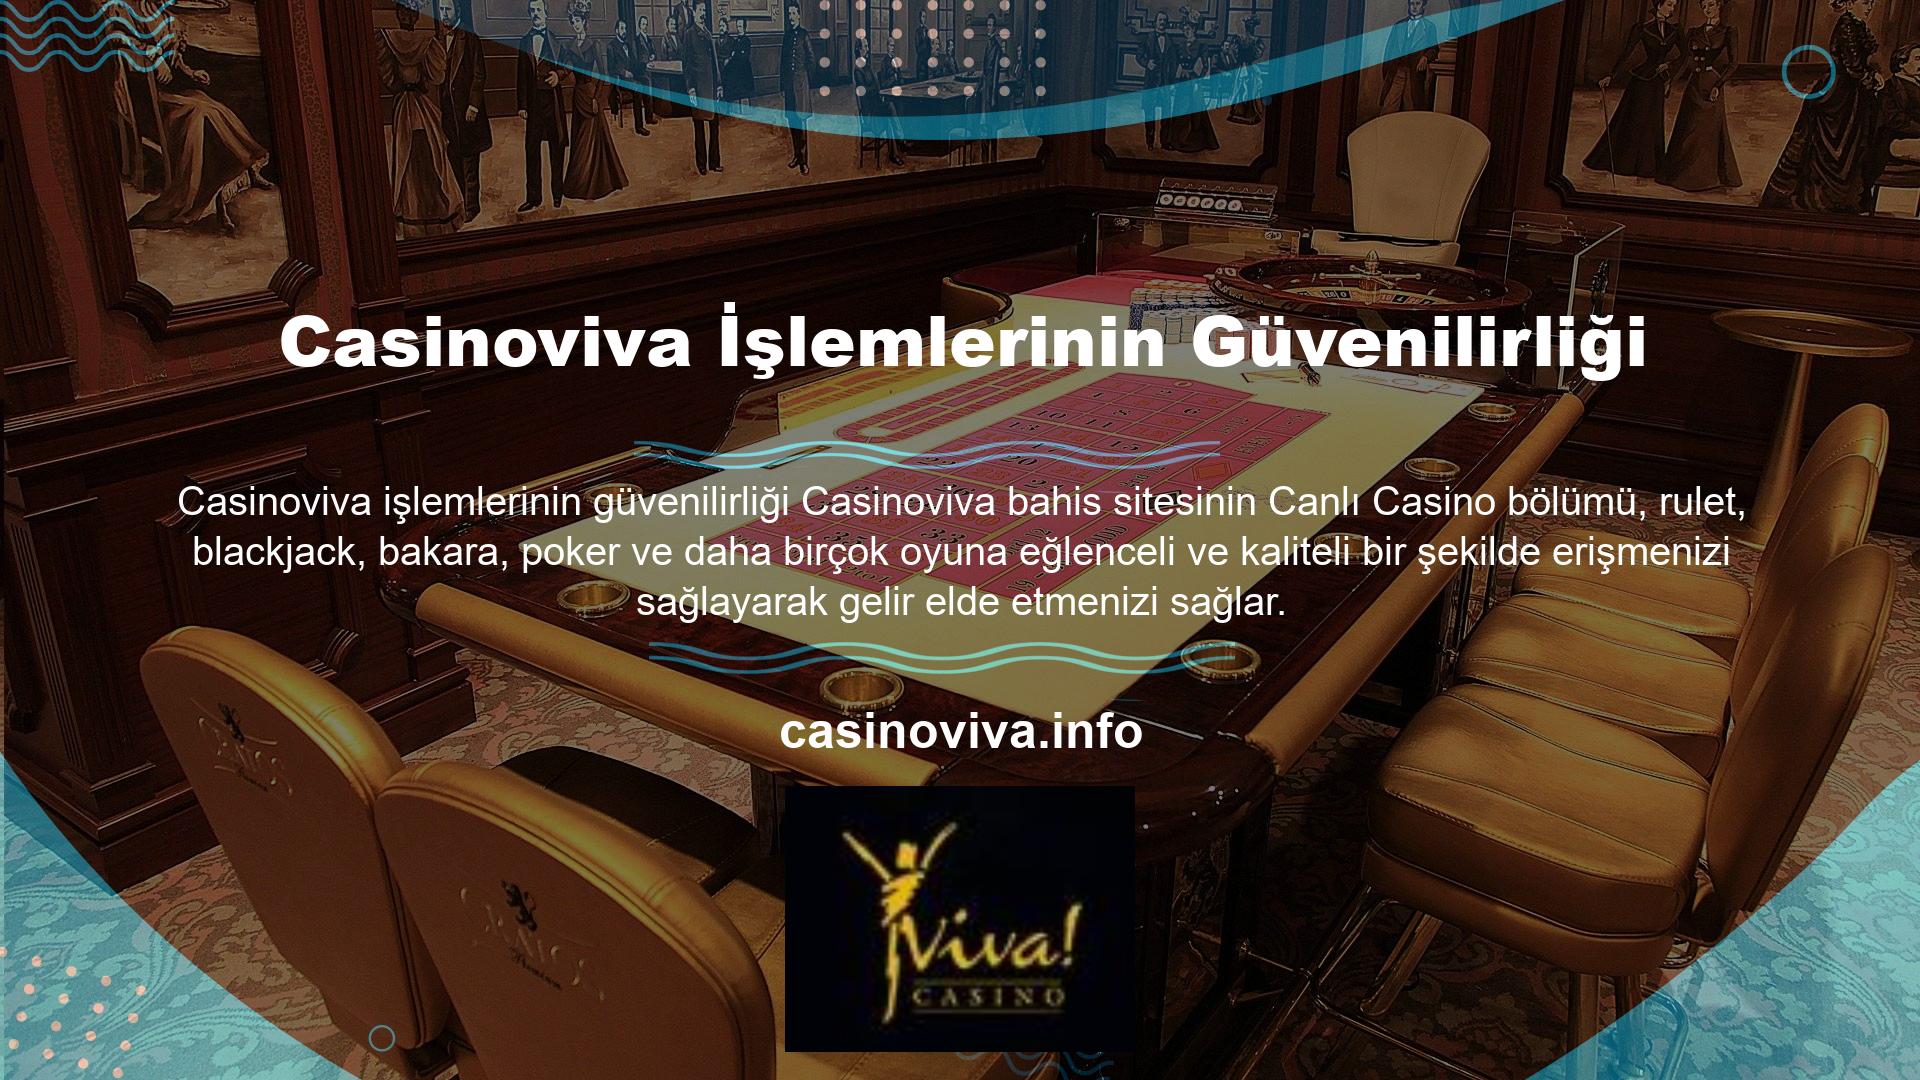 Casinoviva, giriş adresi, güvenilir bahis ortamı ve kolay para yatırma ve çekme işlemleriyle tanınır